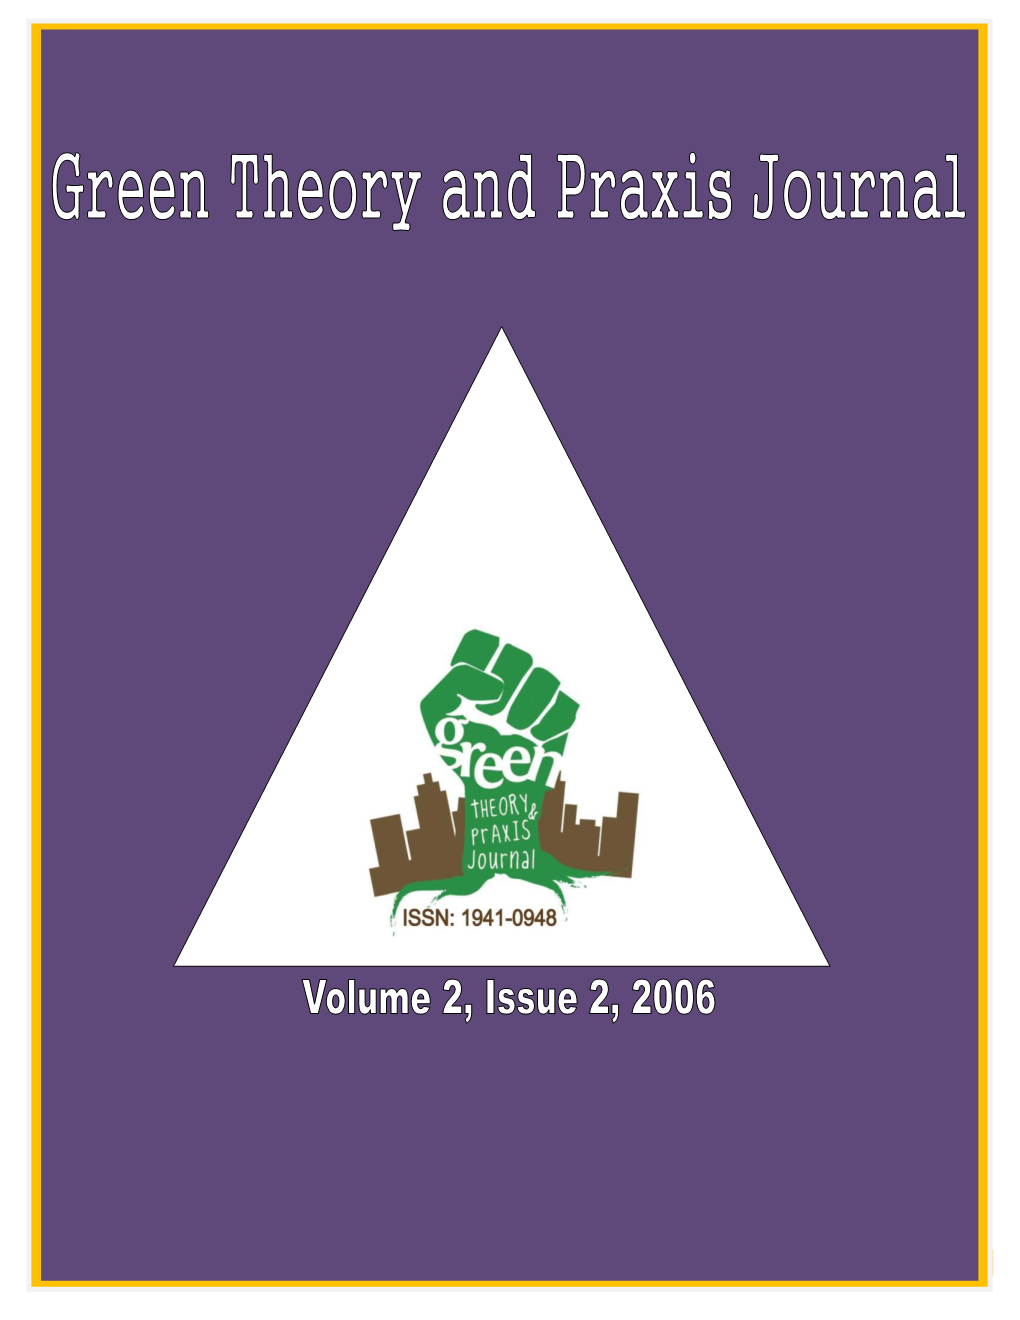 PDF – Vol 2 Issue 2 2006